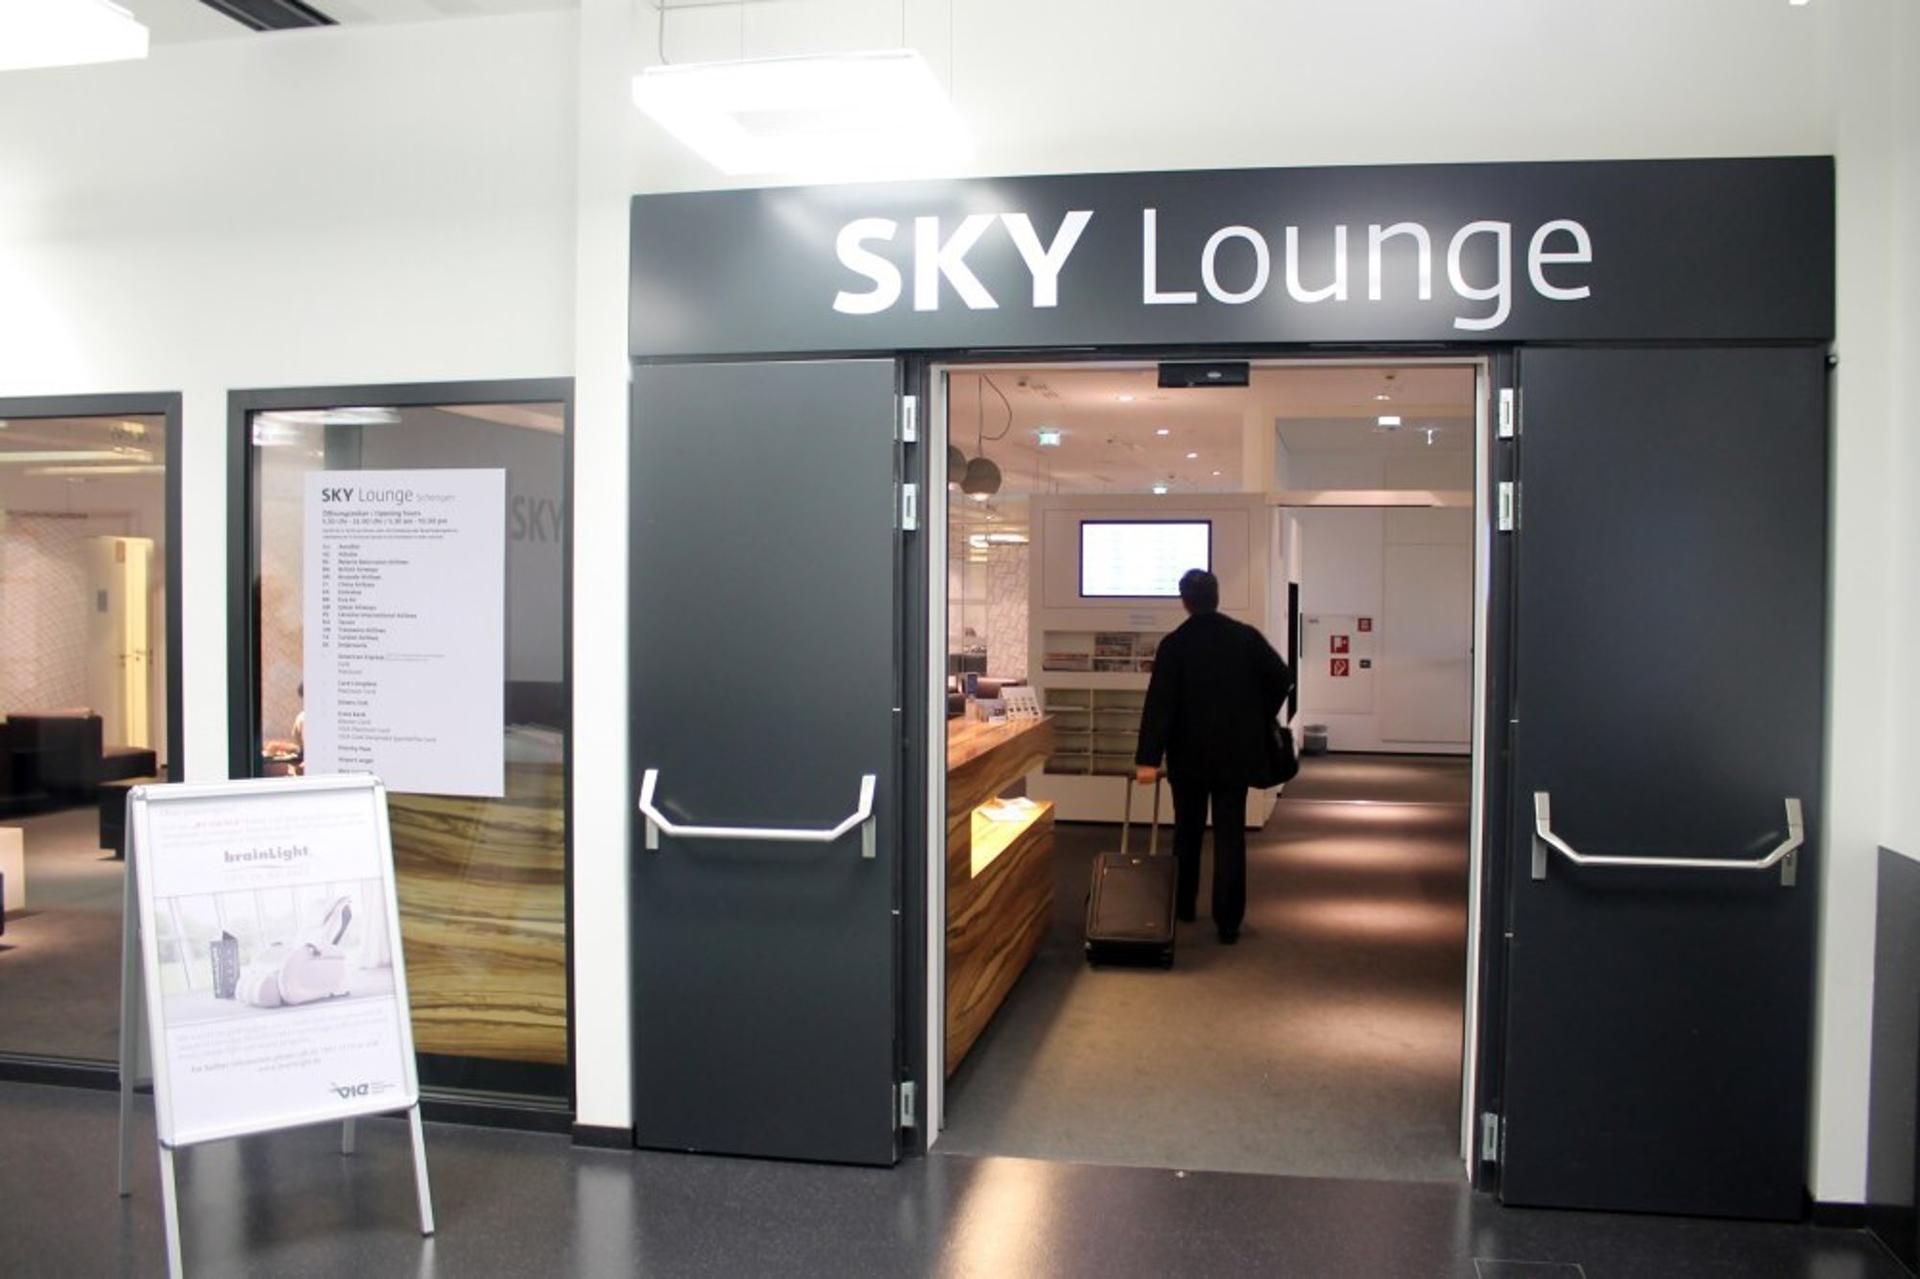 Sky Lounge (Schengen) image 39 of 43